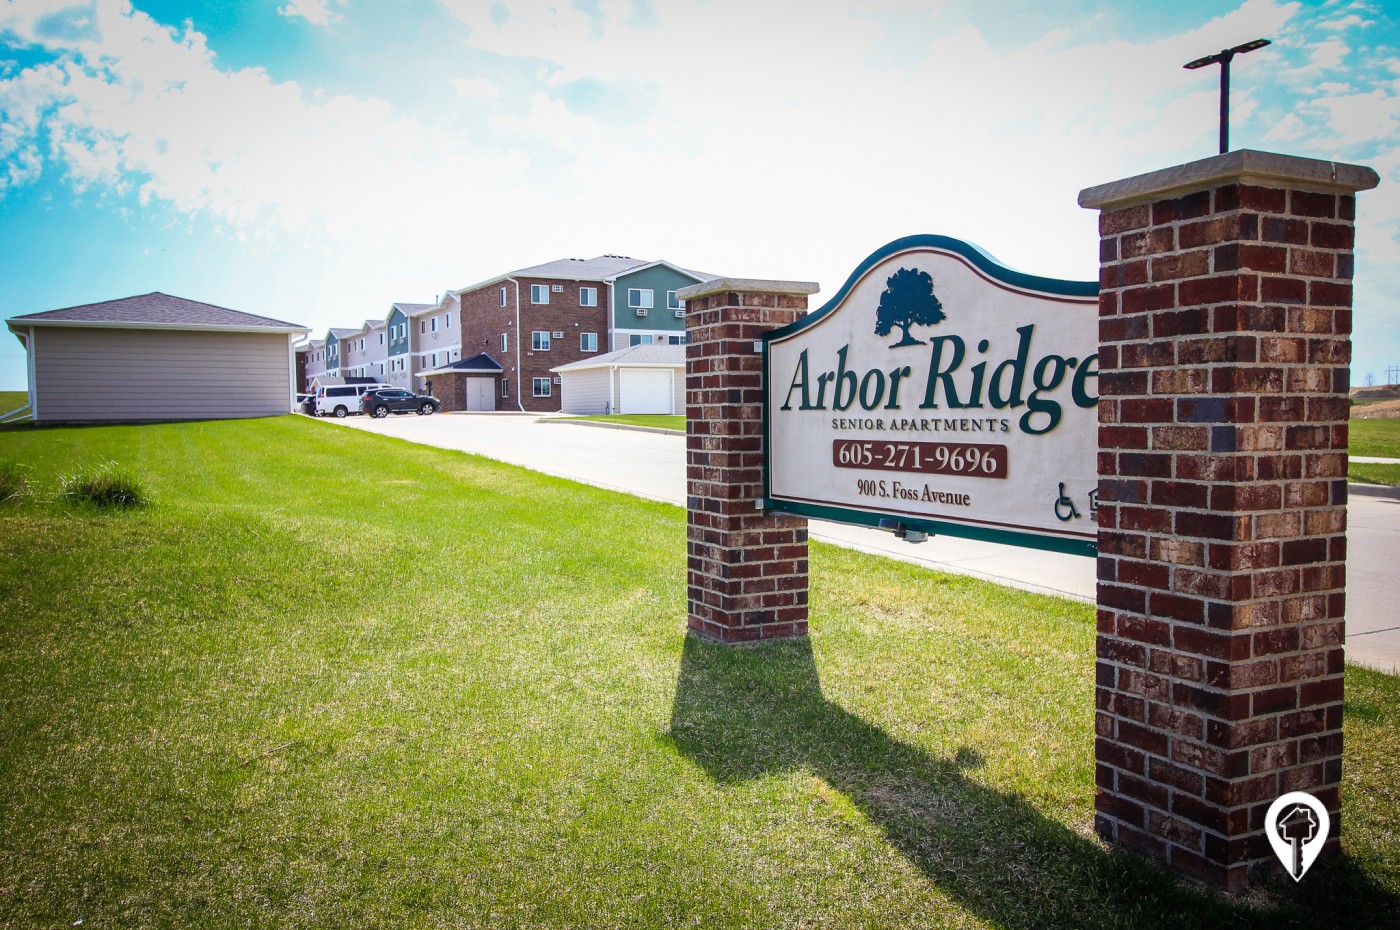 Kleve Real Estate - Arbor Ridge Senior Apartments